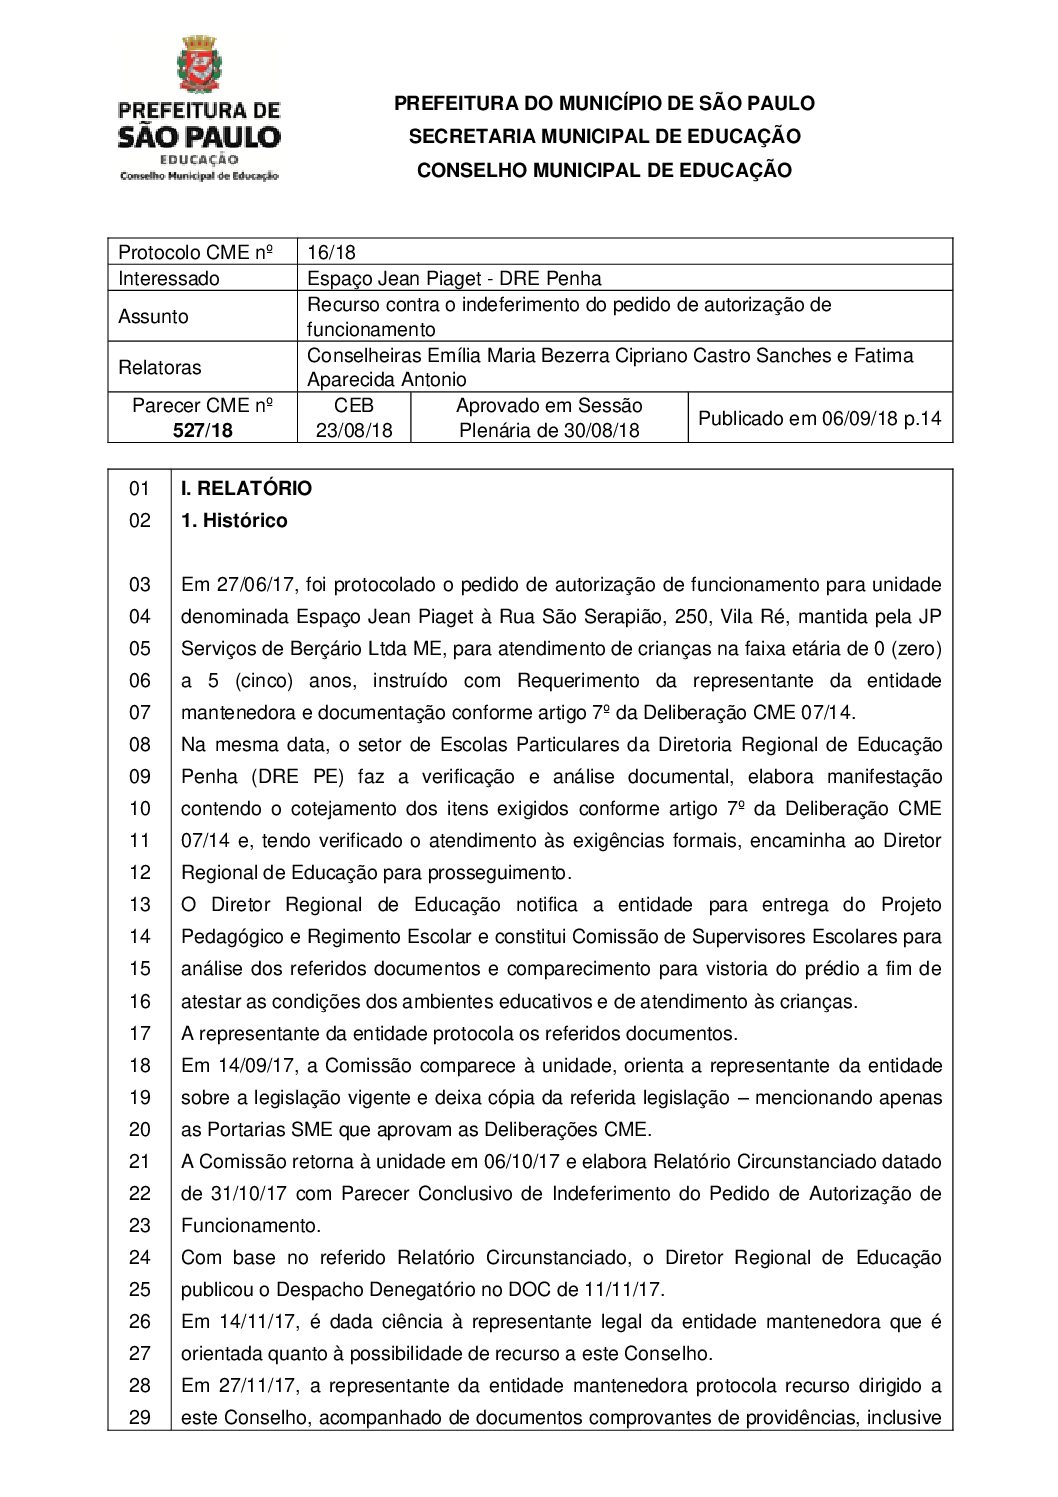 Parecer CME nº 527/2018 - Espaço Jean Piaget (DRE Penha) - Recurso contra o indeferimento do pedido de autorização de funcionamento 